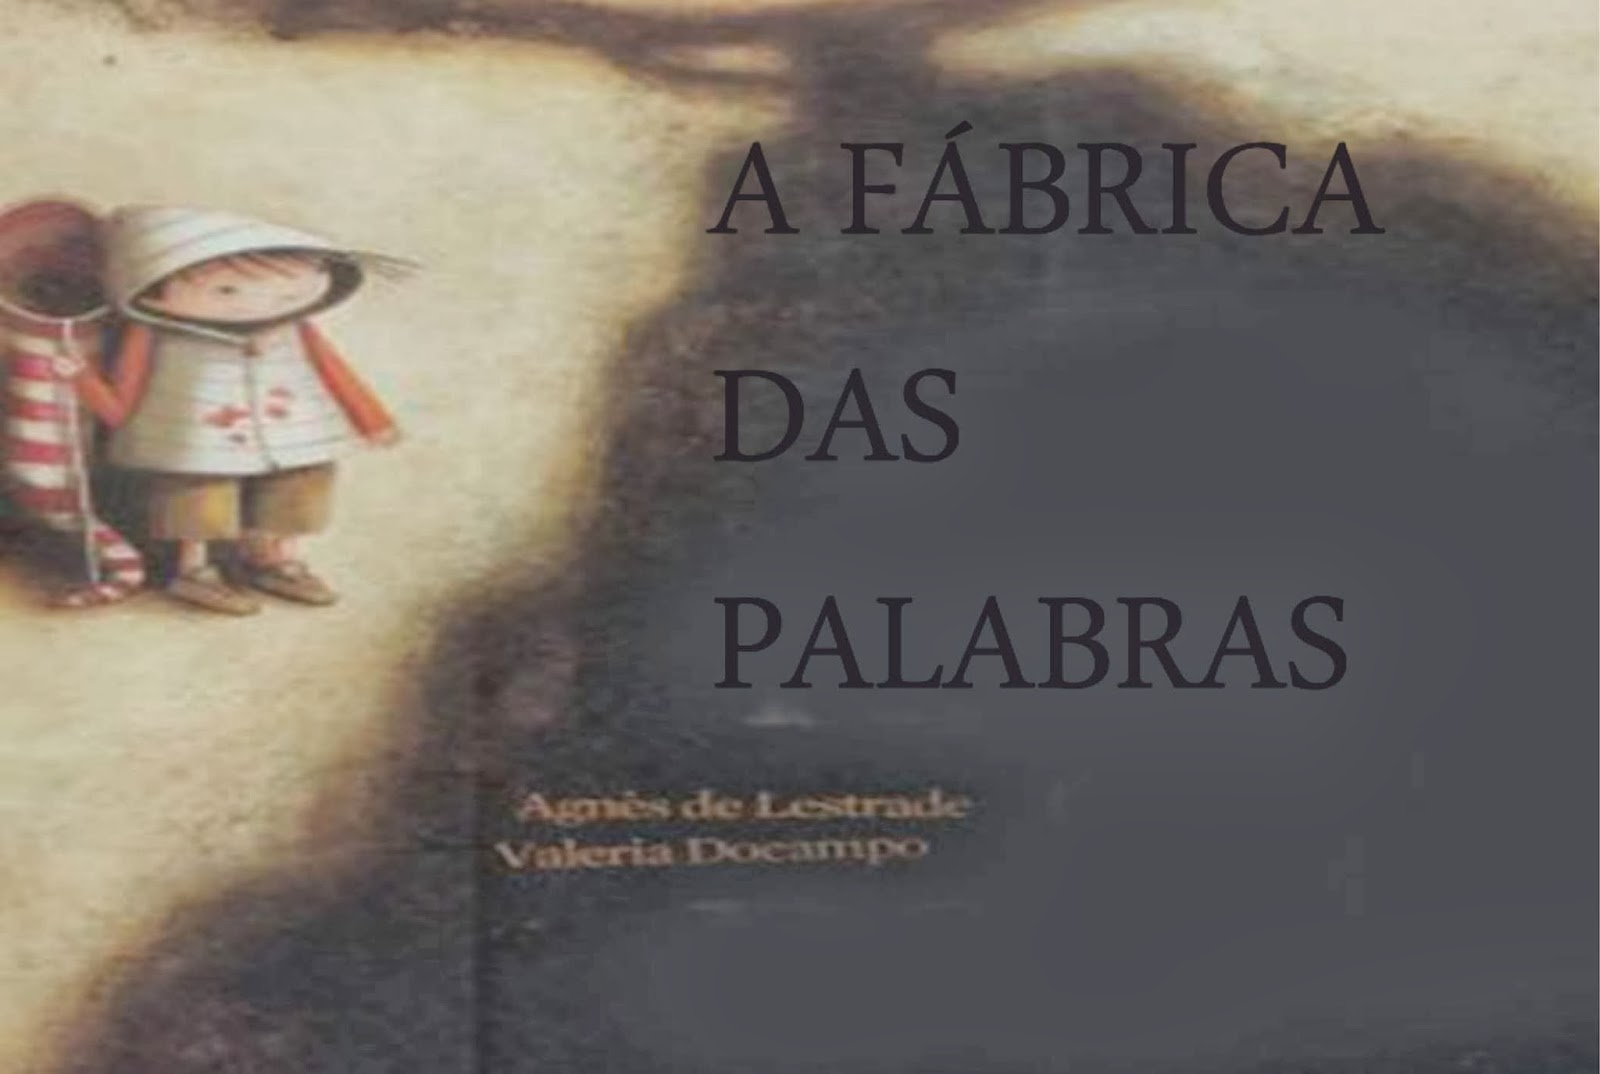 http://www.slideboom.com/presentations/232002/A-FABRICA-DAS-PALABRA